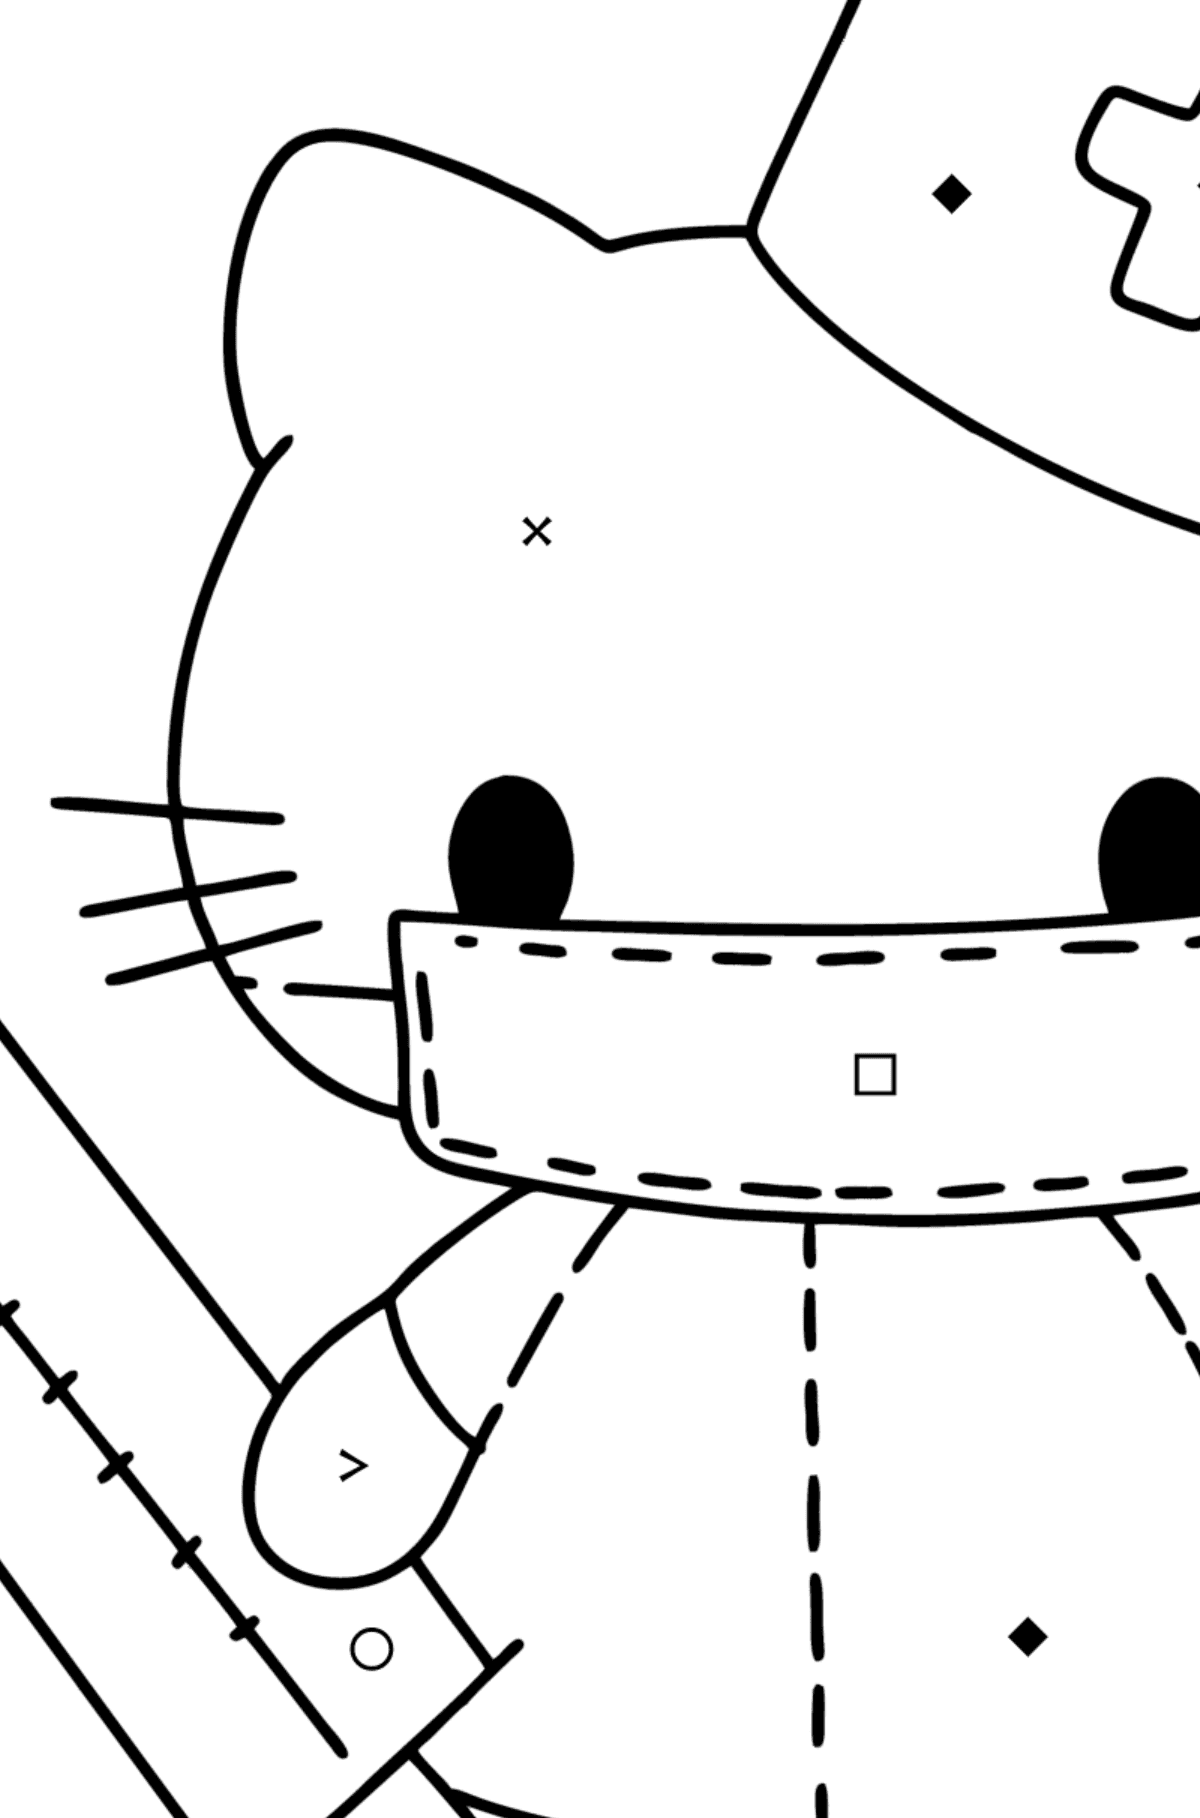 Boyama sayfası Hello Kitty hemşire - Sembollere ve Geometrik Şekillerle Boyama çocuklar için